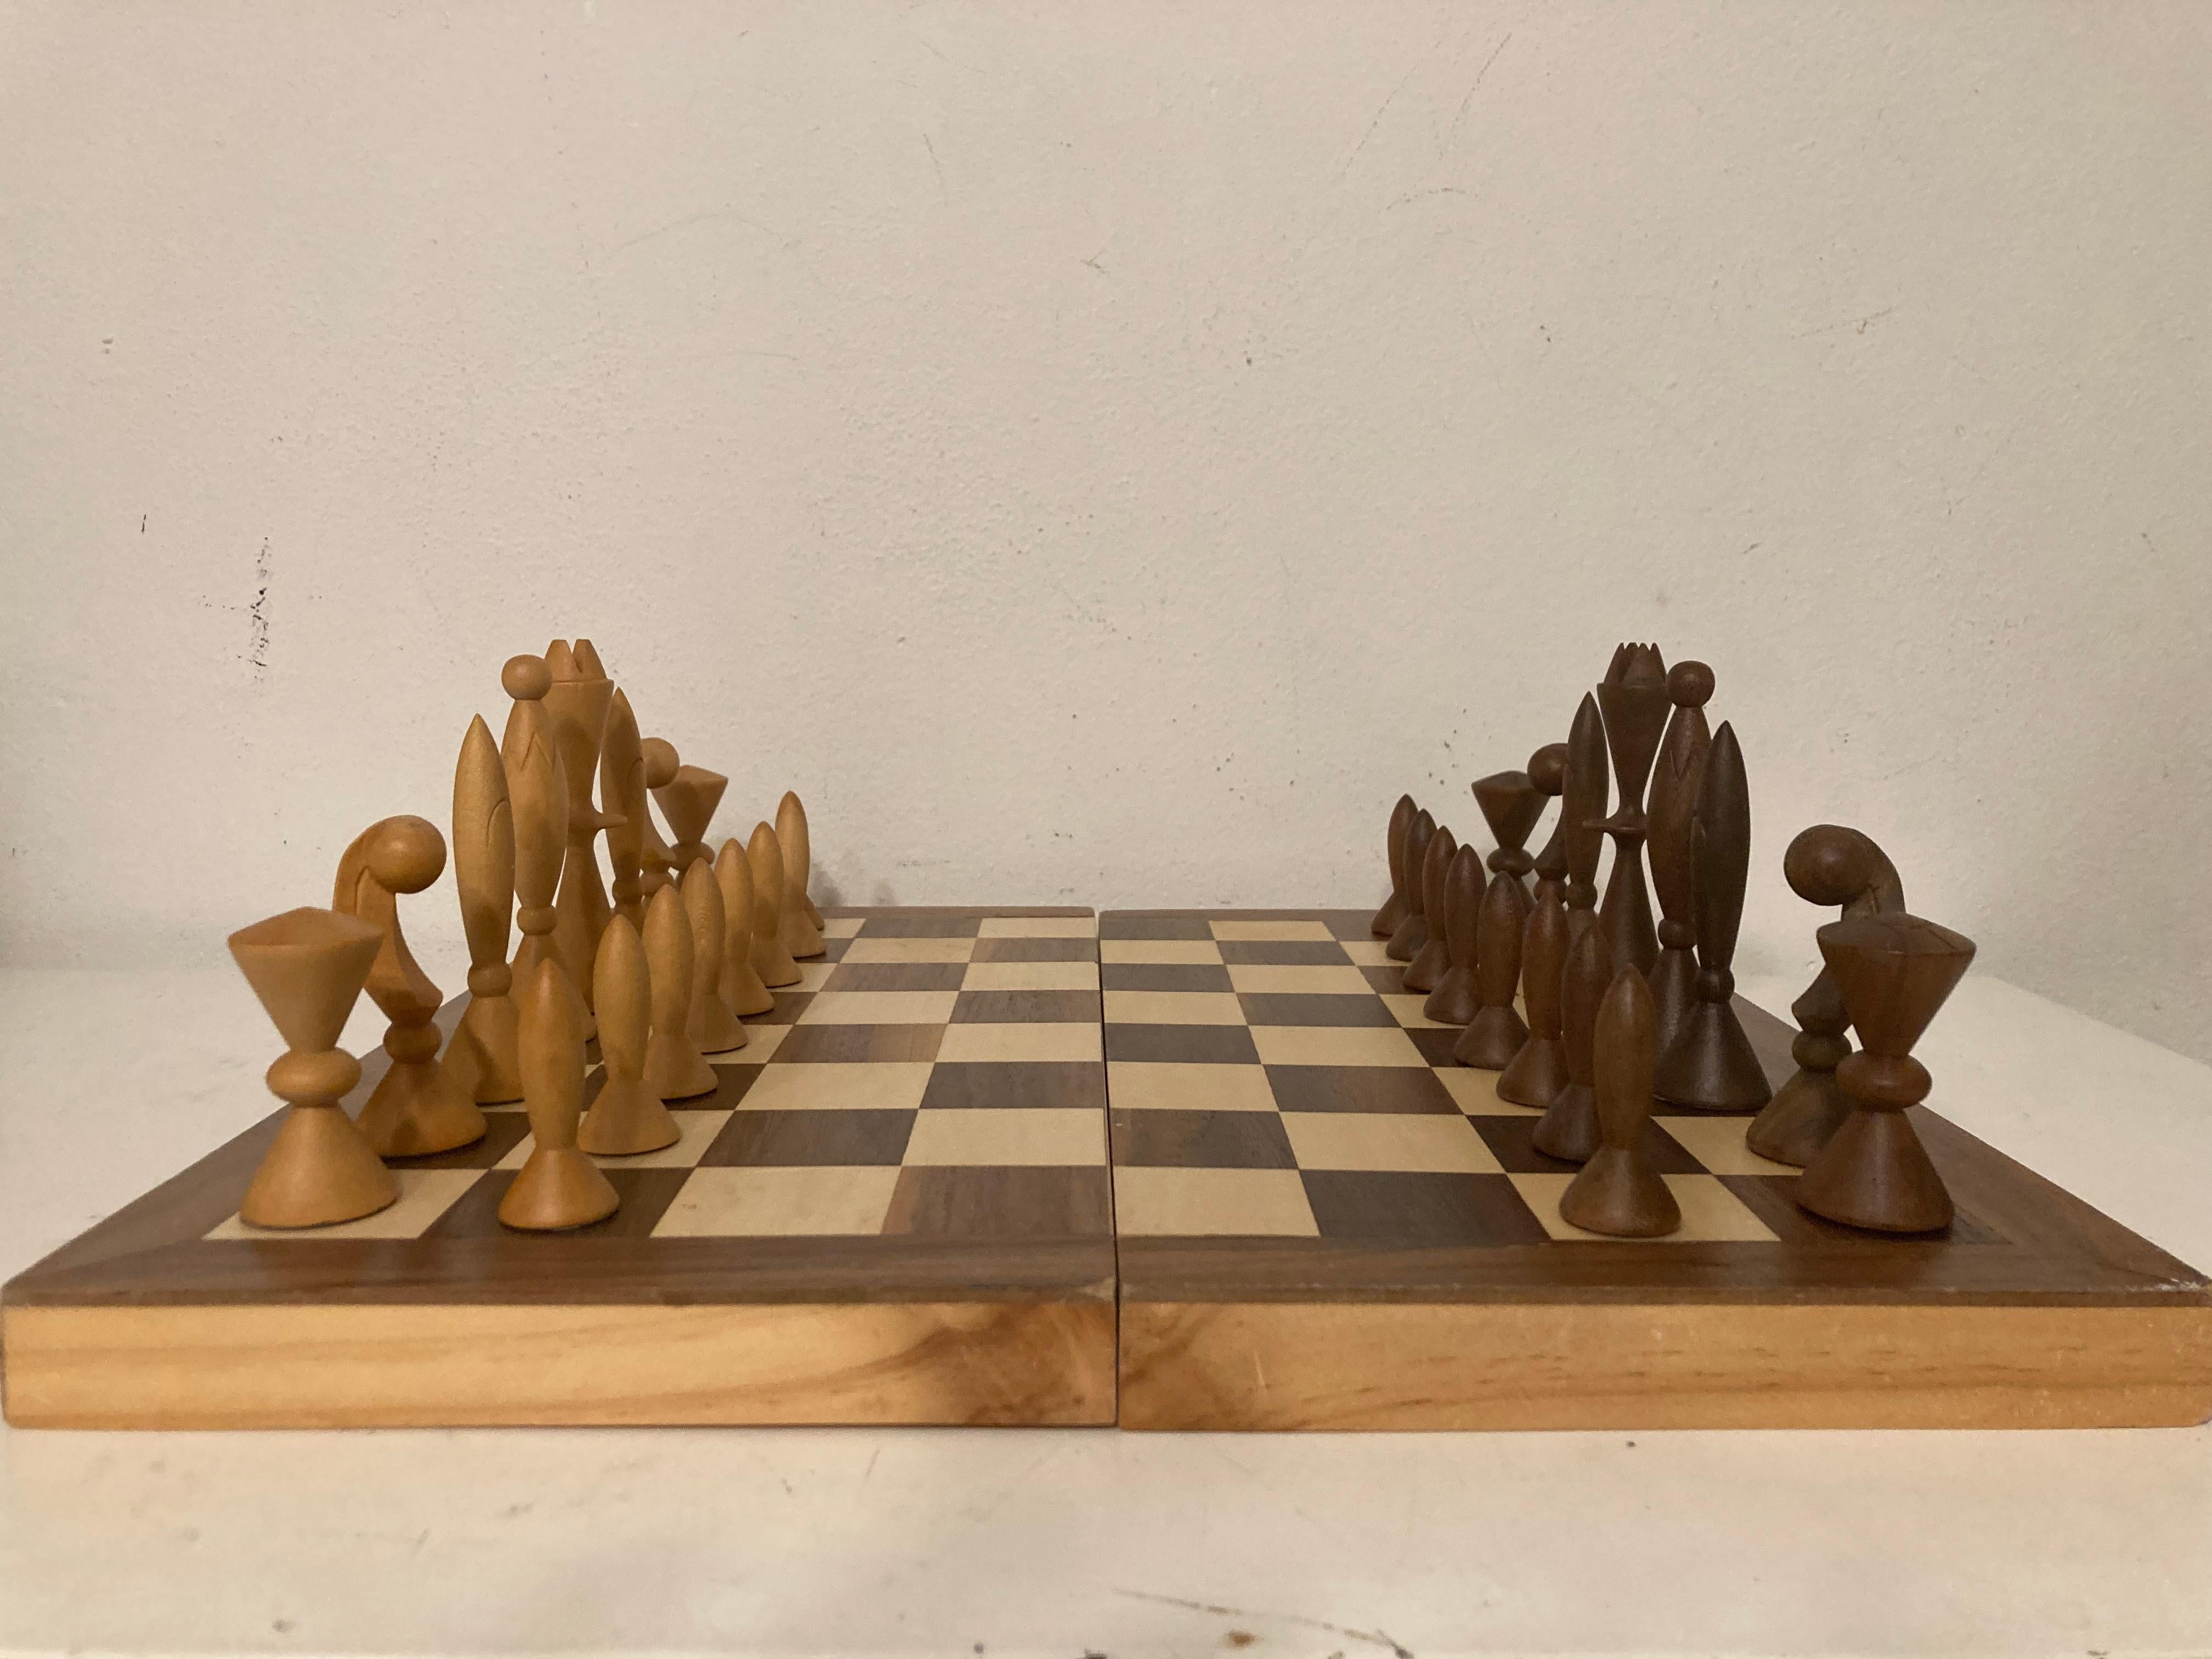 ANRI Schachspiel für das Weltraumzeitalter Entworfen von Elliotts, Nussbaum und Ahorn. Hergestellt in Italien. Das Set wird ohne Schachbrett geliefert. Das Brett auf den Bildern ist nicht original und dient nur als Beispiel.